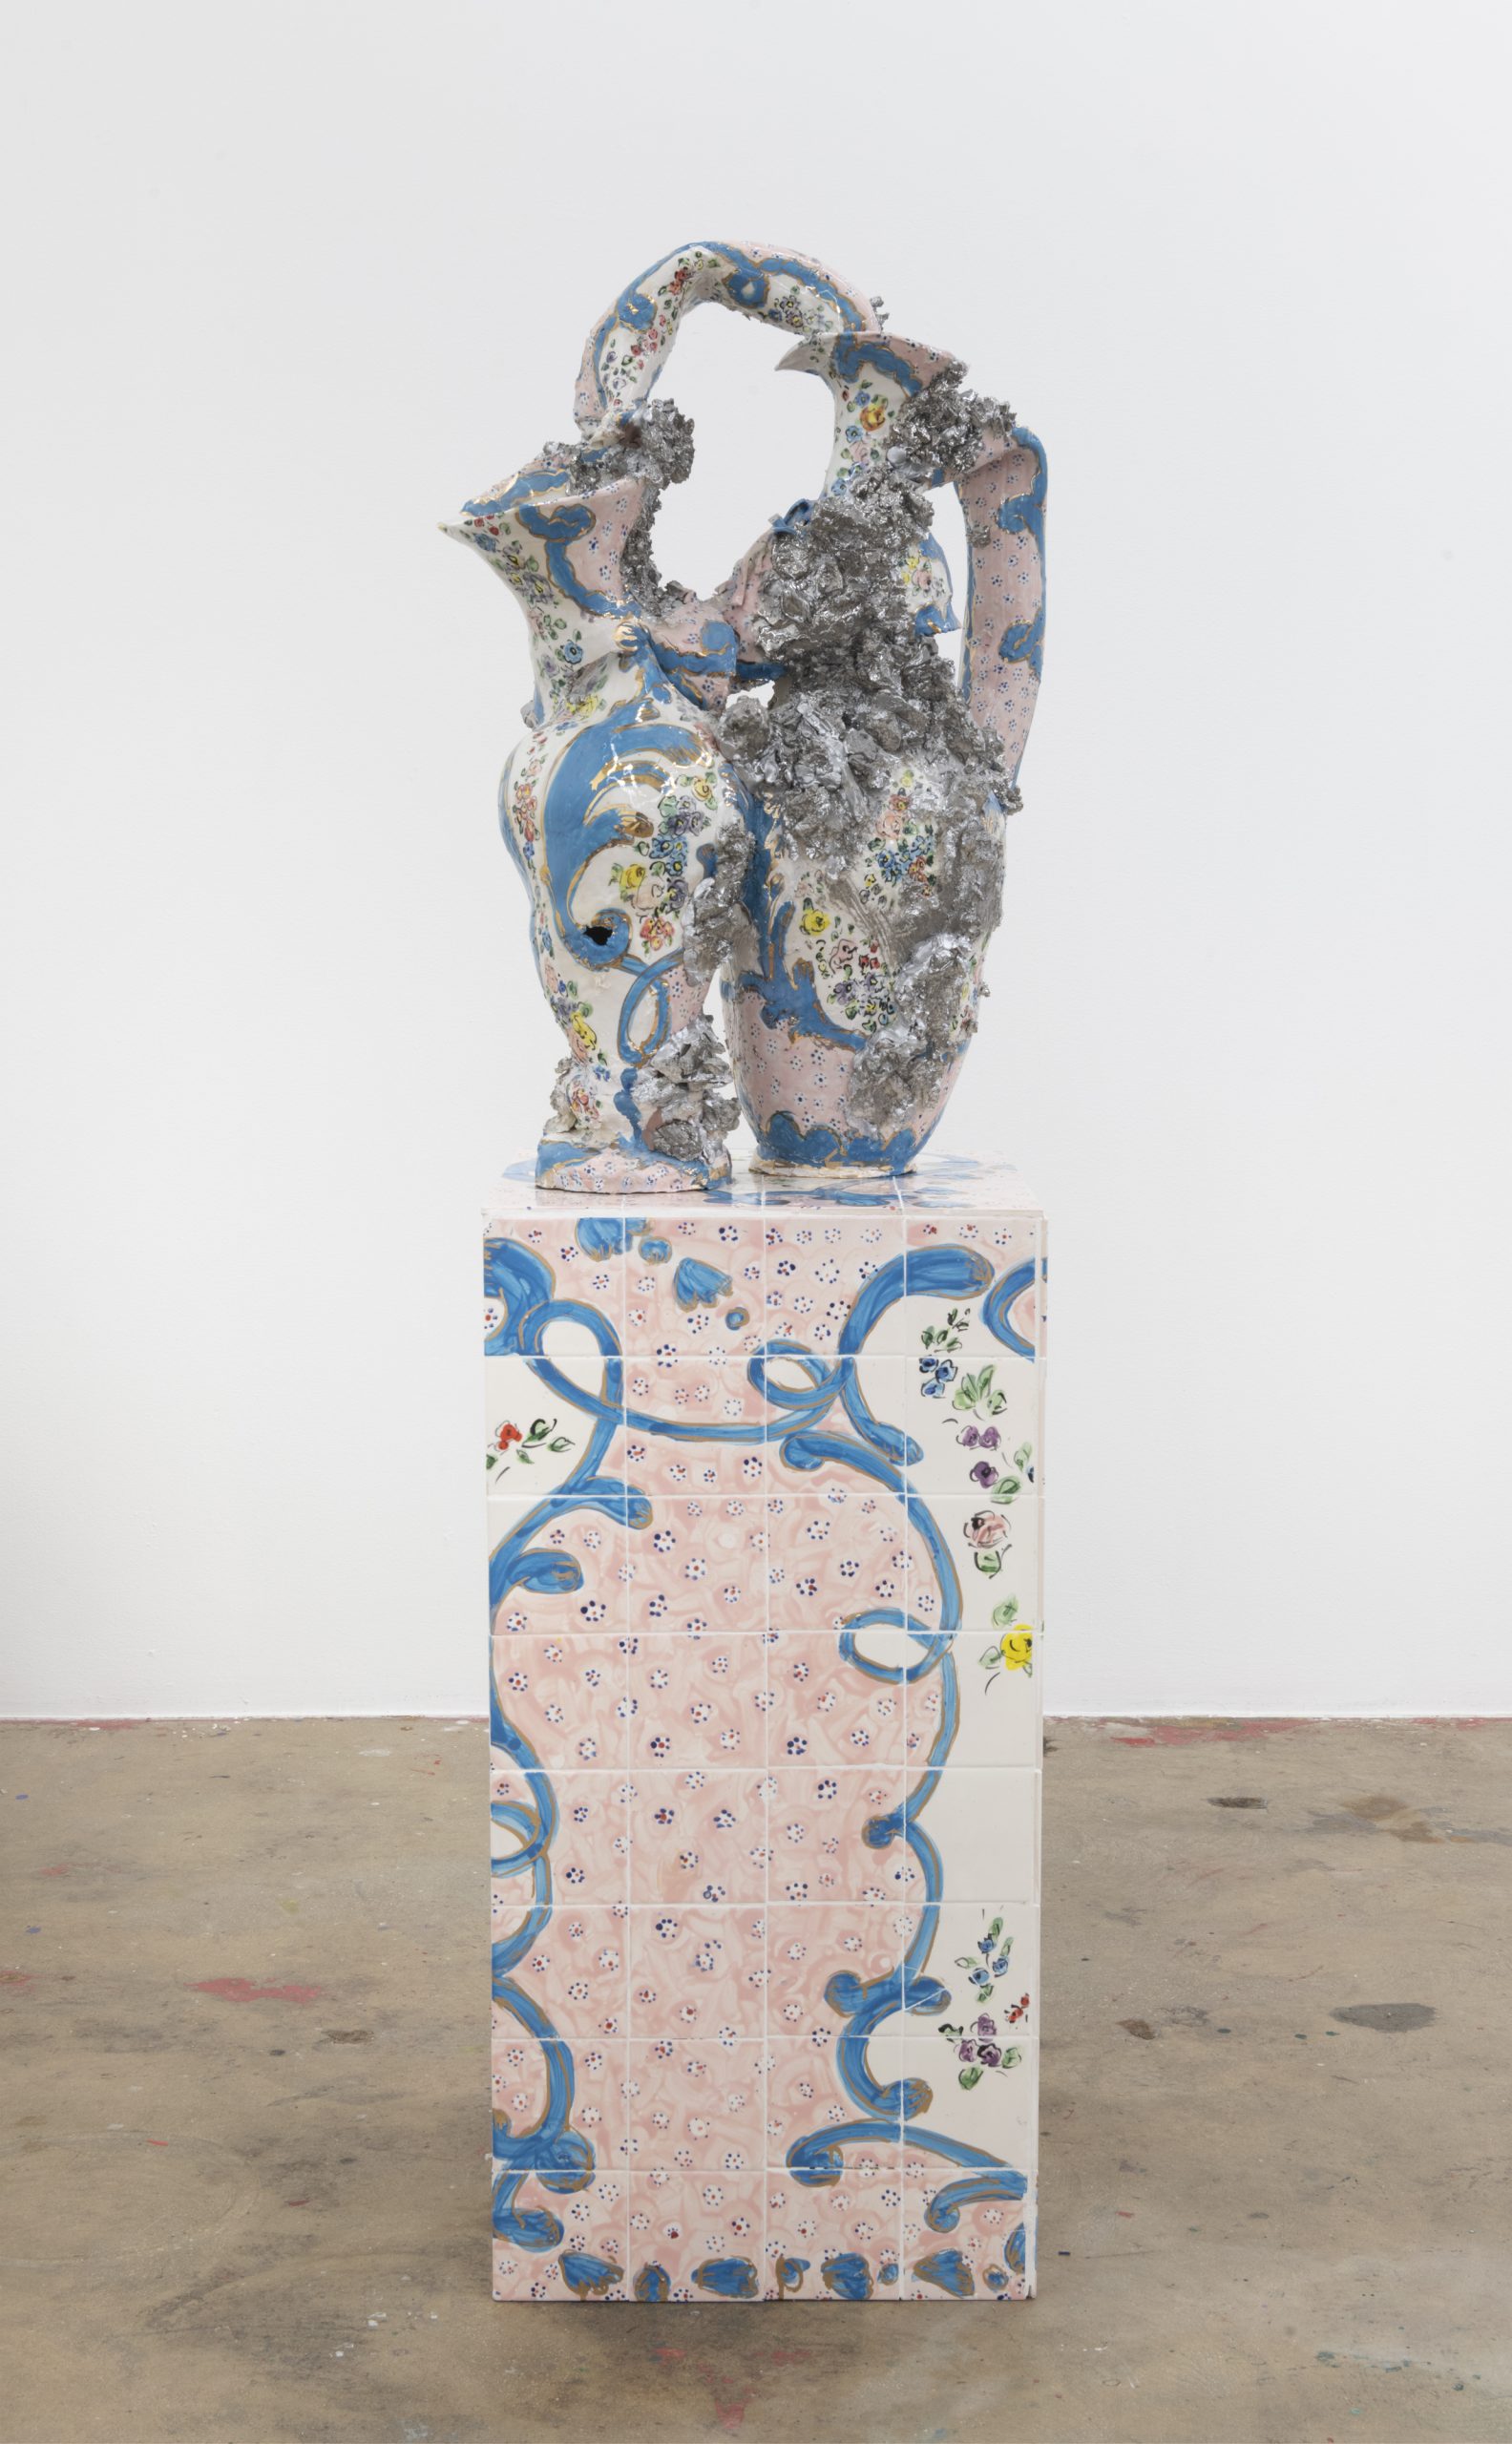 Francesca DiMattio, Sevres, Nina Johnson, Miami, Porcelain, Sculptures, Installation